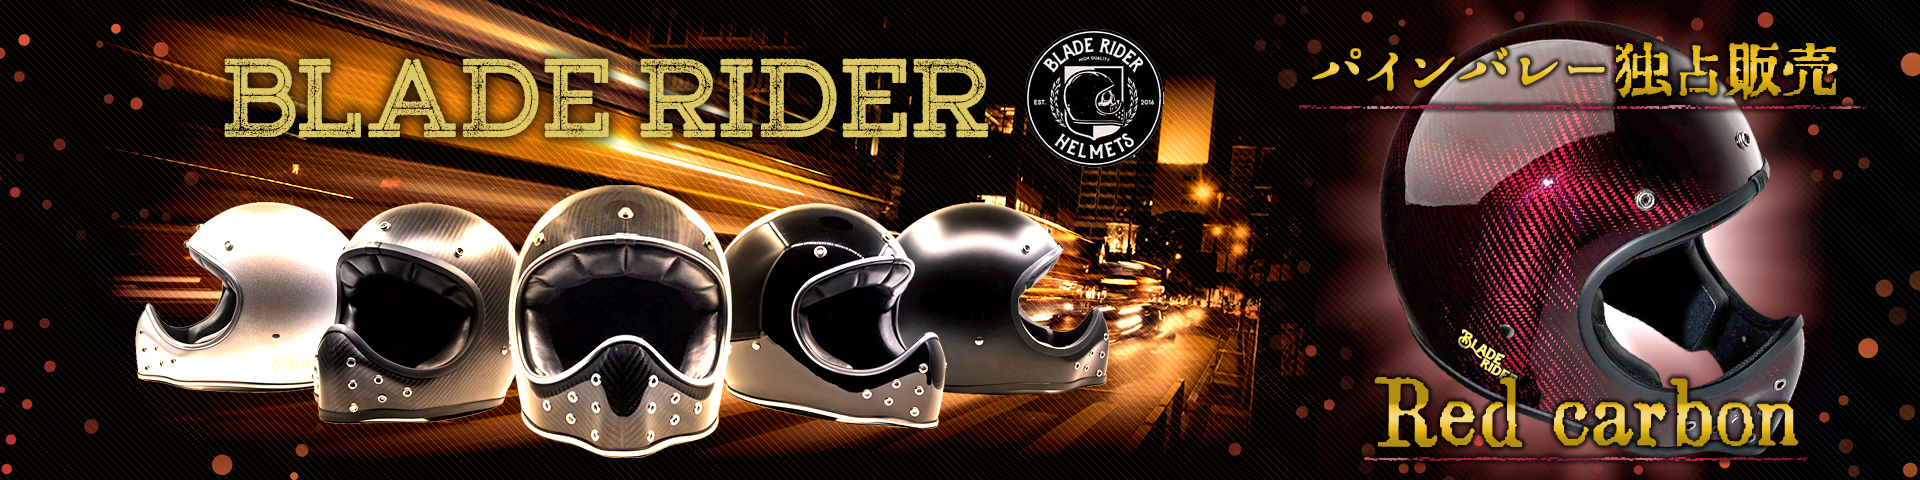 【SG規格・予約特価販売】BLADE RIDER HELMET■ブレードライダー MOTOシリーズ レッドカーボンフルフェイスヘルメット